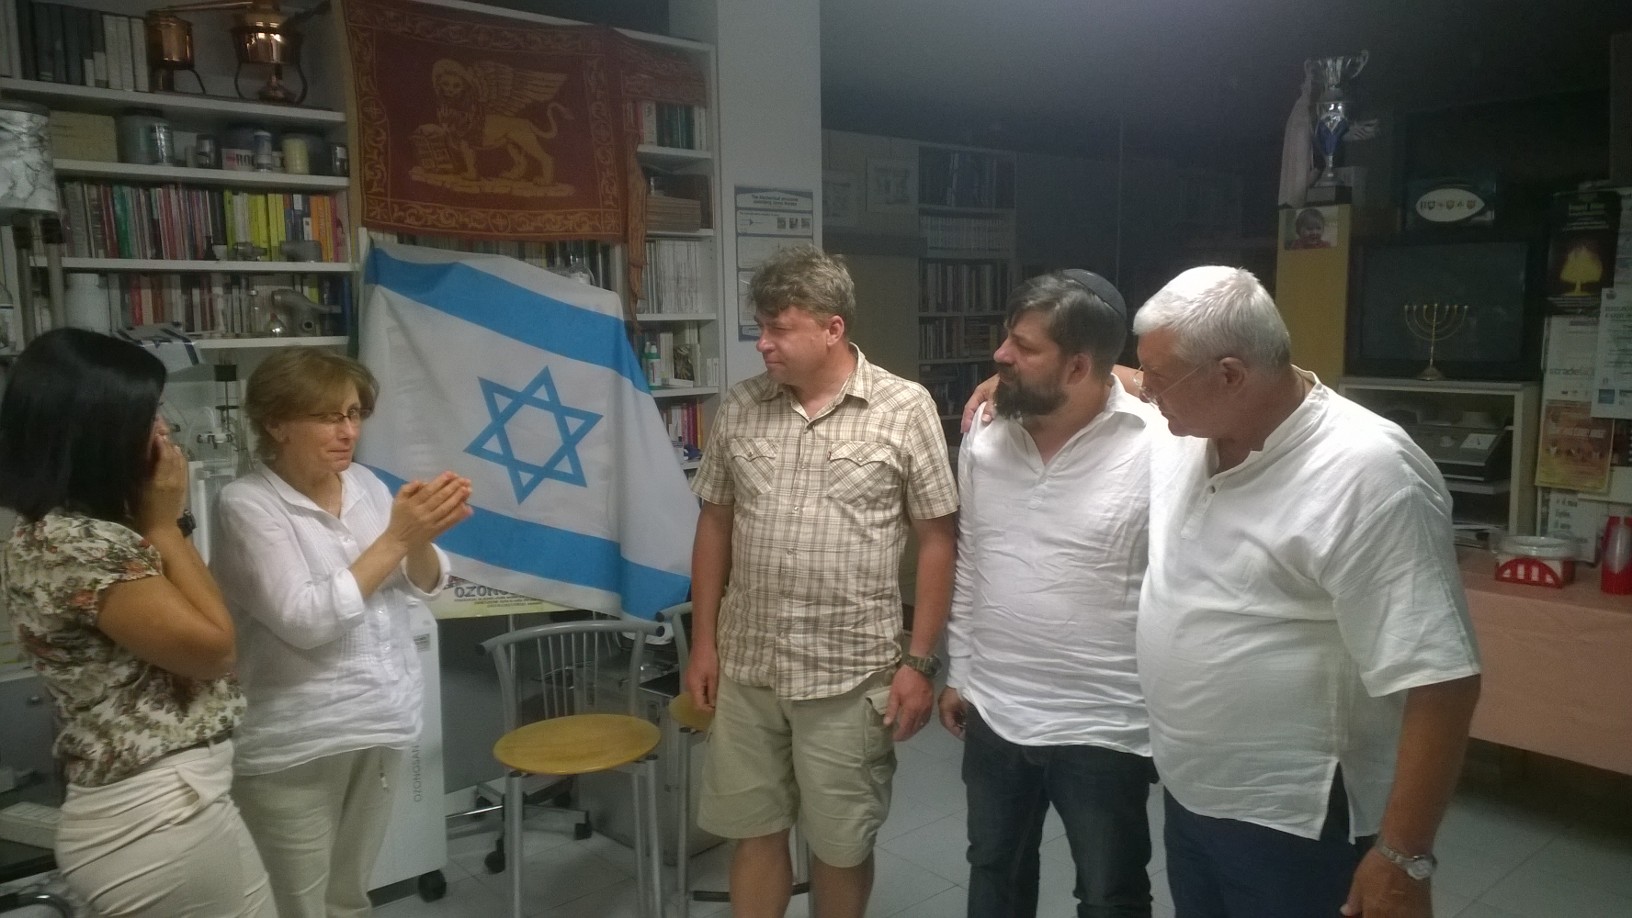 Resoconto dell’incontro con il rabbino messianico di Chişinău Moldova